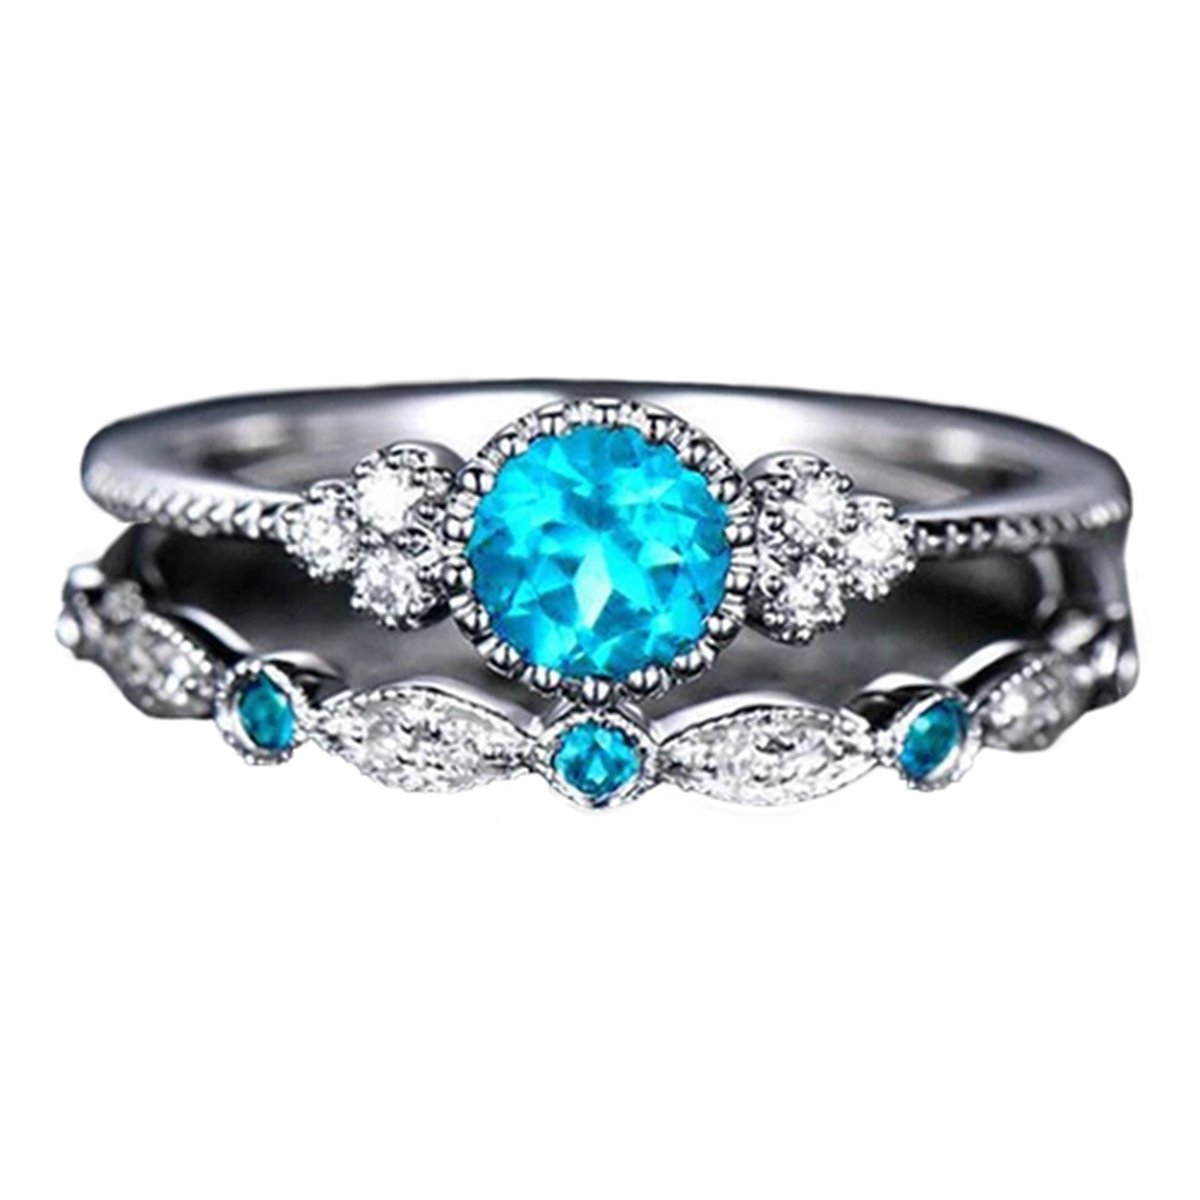 Ring met edelsteen (set) - Ring met blauwe steen - Ring maat 16 zilver kleurig staal - Maat 51 ring dames ringen set van 2 - Aquamarijn